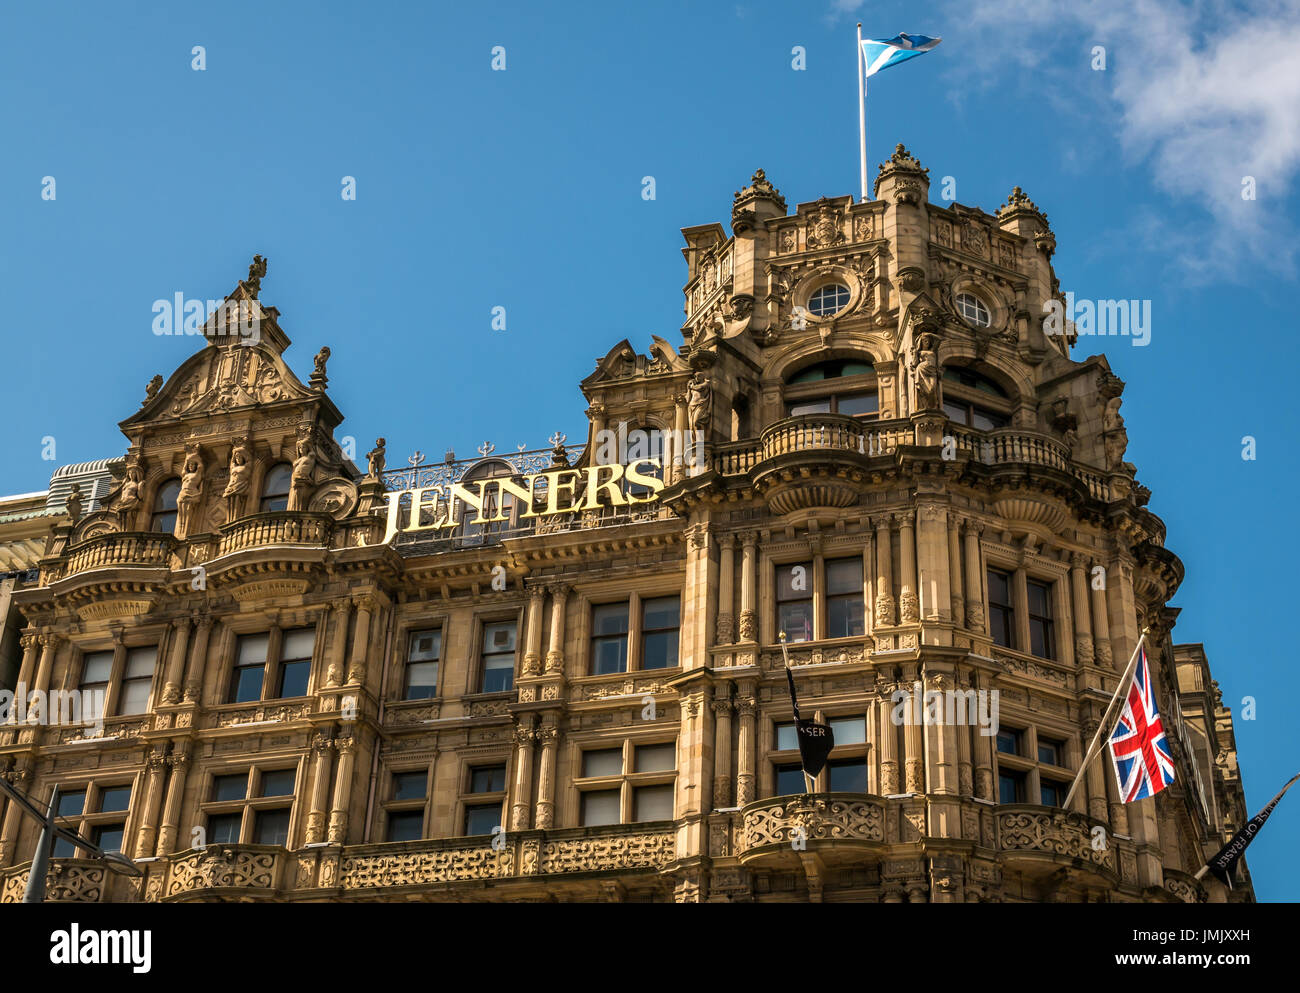 VEW der viktorianischen gotischen Architektur des Jenners-Kaufhauses von William Hamilton Beattie, Princes Street, Edinburgh, Schottland, Großbritannien Stockfoto